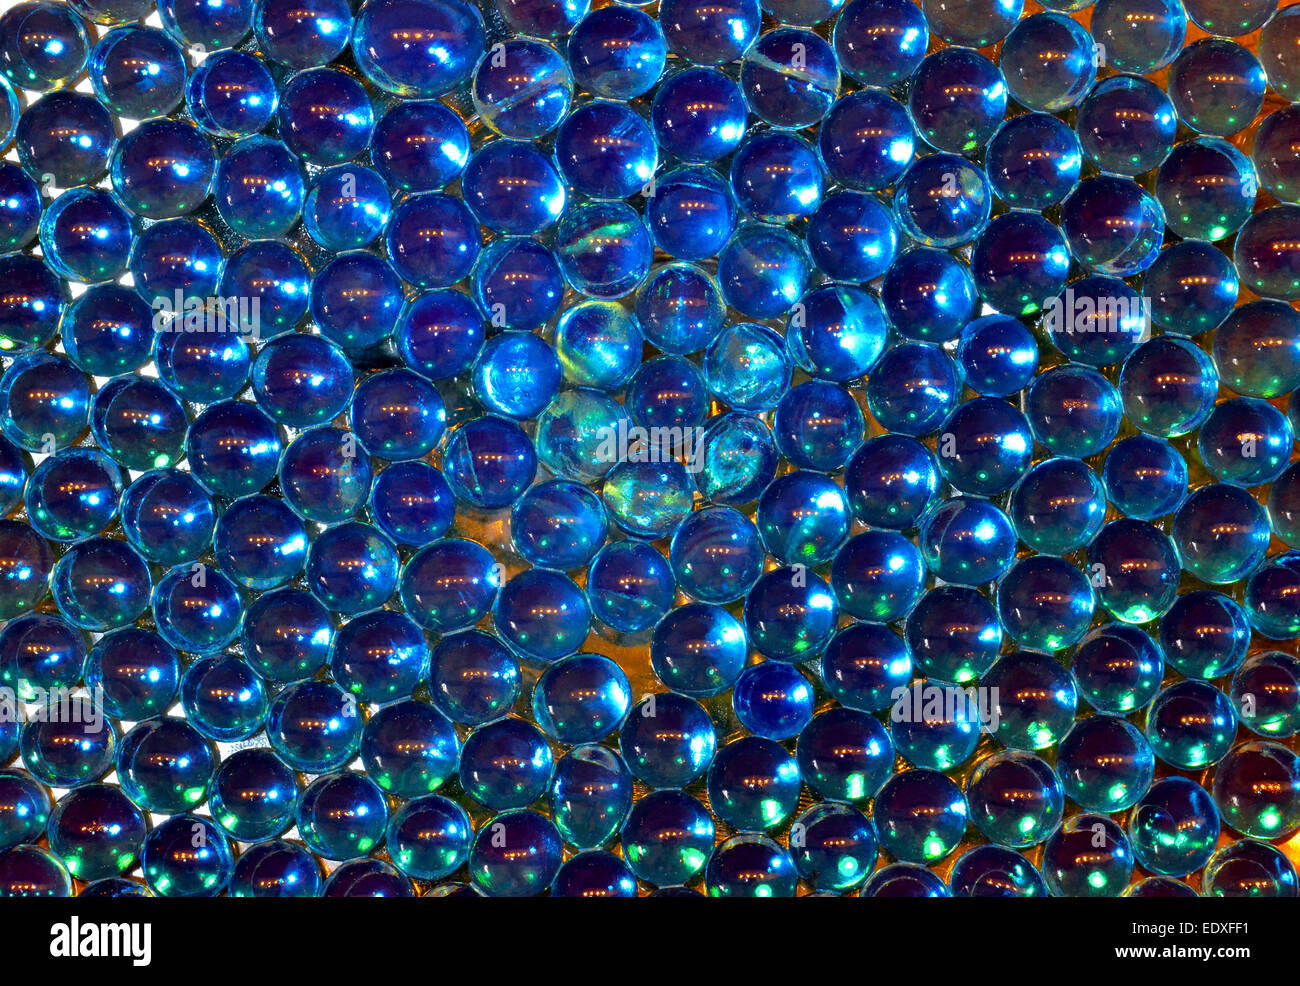 Este resumen de bolas de tamaño de mármol hechas de un polímero colorfast que absorbe, almacena y libera el agua también hace un fondo llamativo. Foto de stock